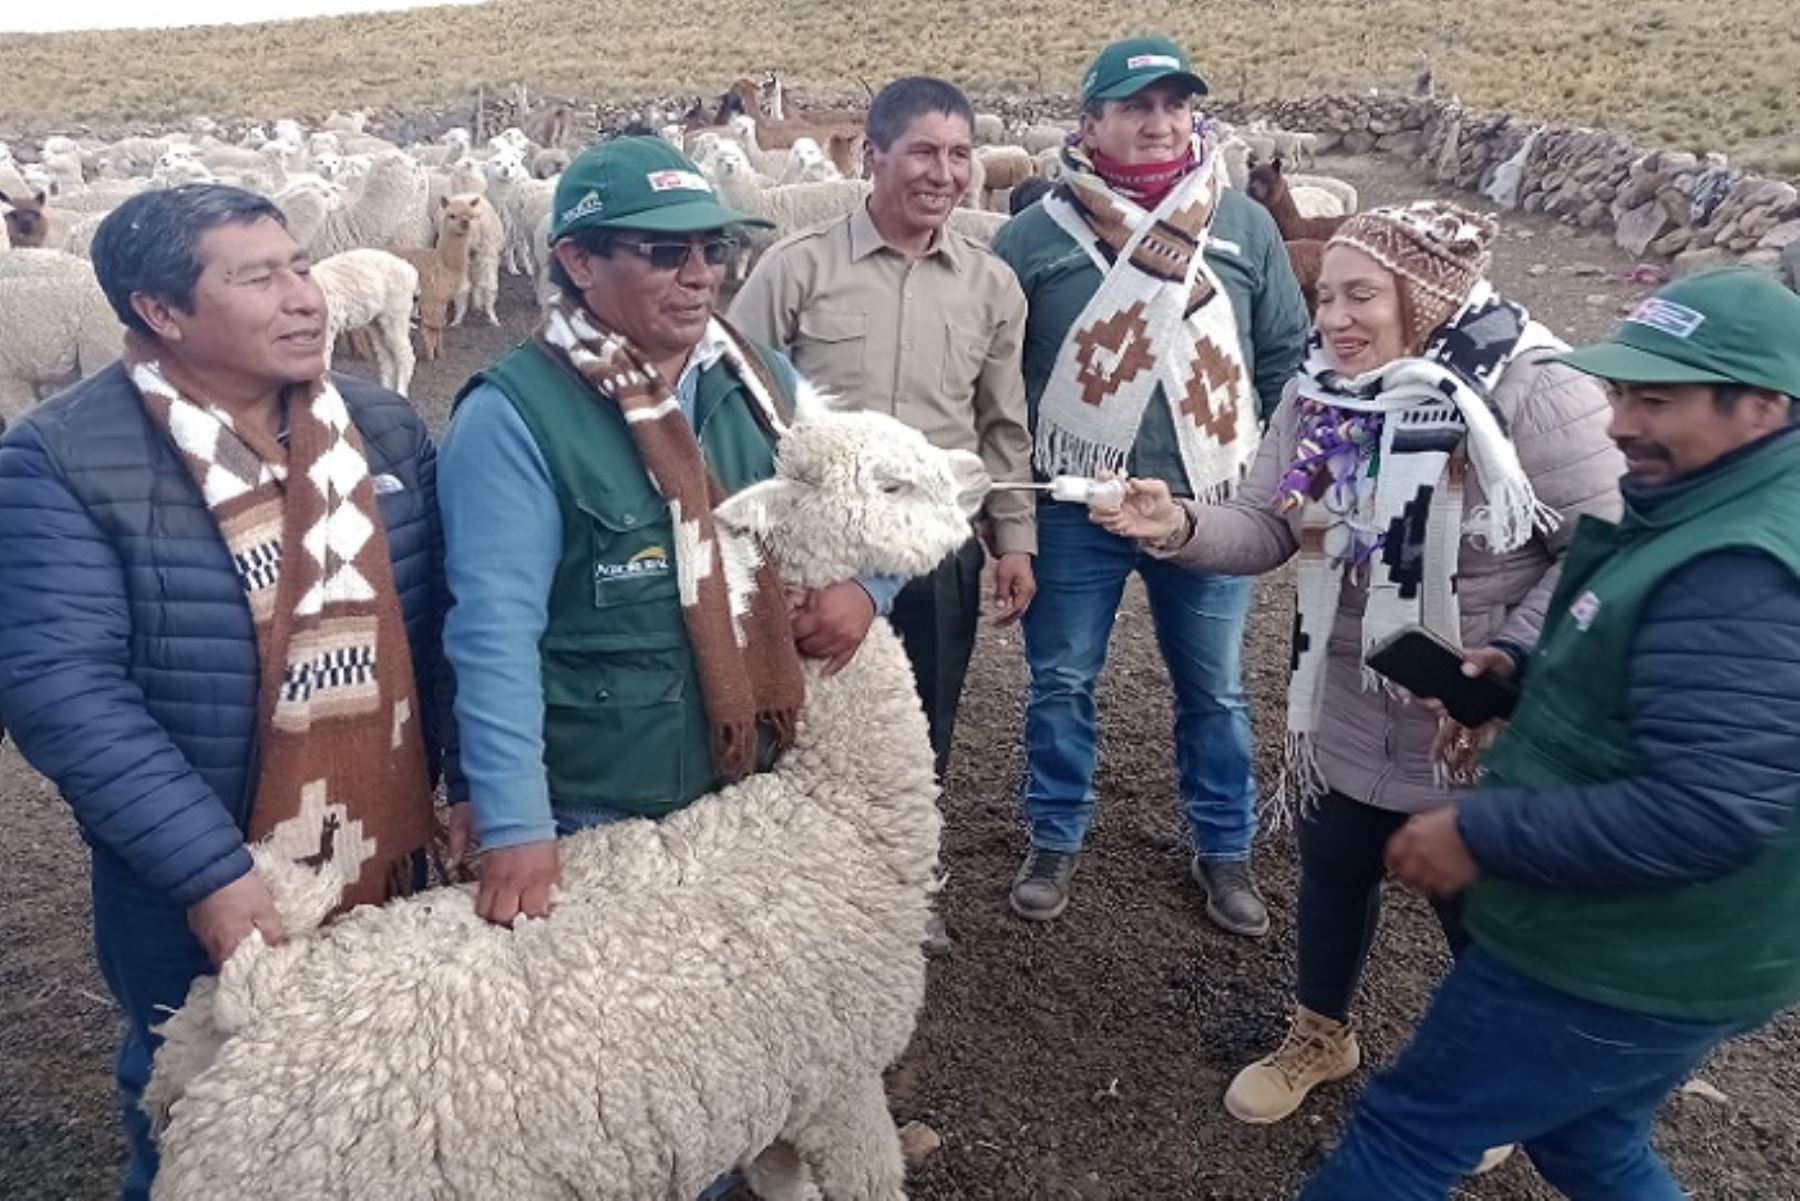 Agro Rural implementará en la región Puno, 610 cobertizos y 460 fitotoldos en el presente año, con una inversión de cerca de 12 millones de soles.